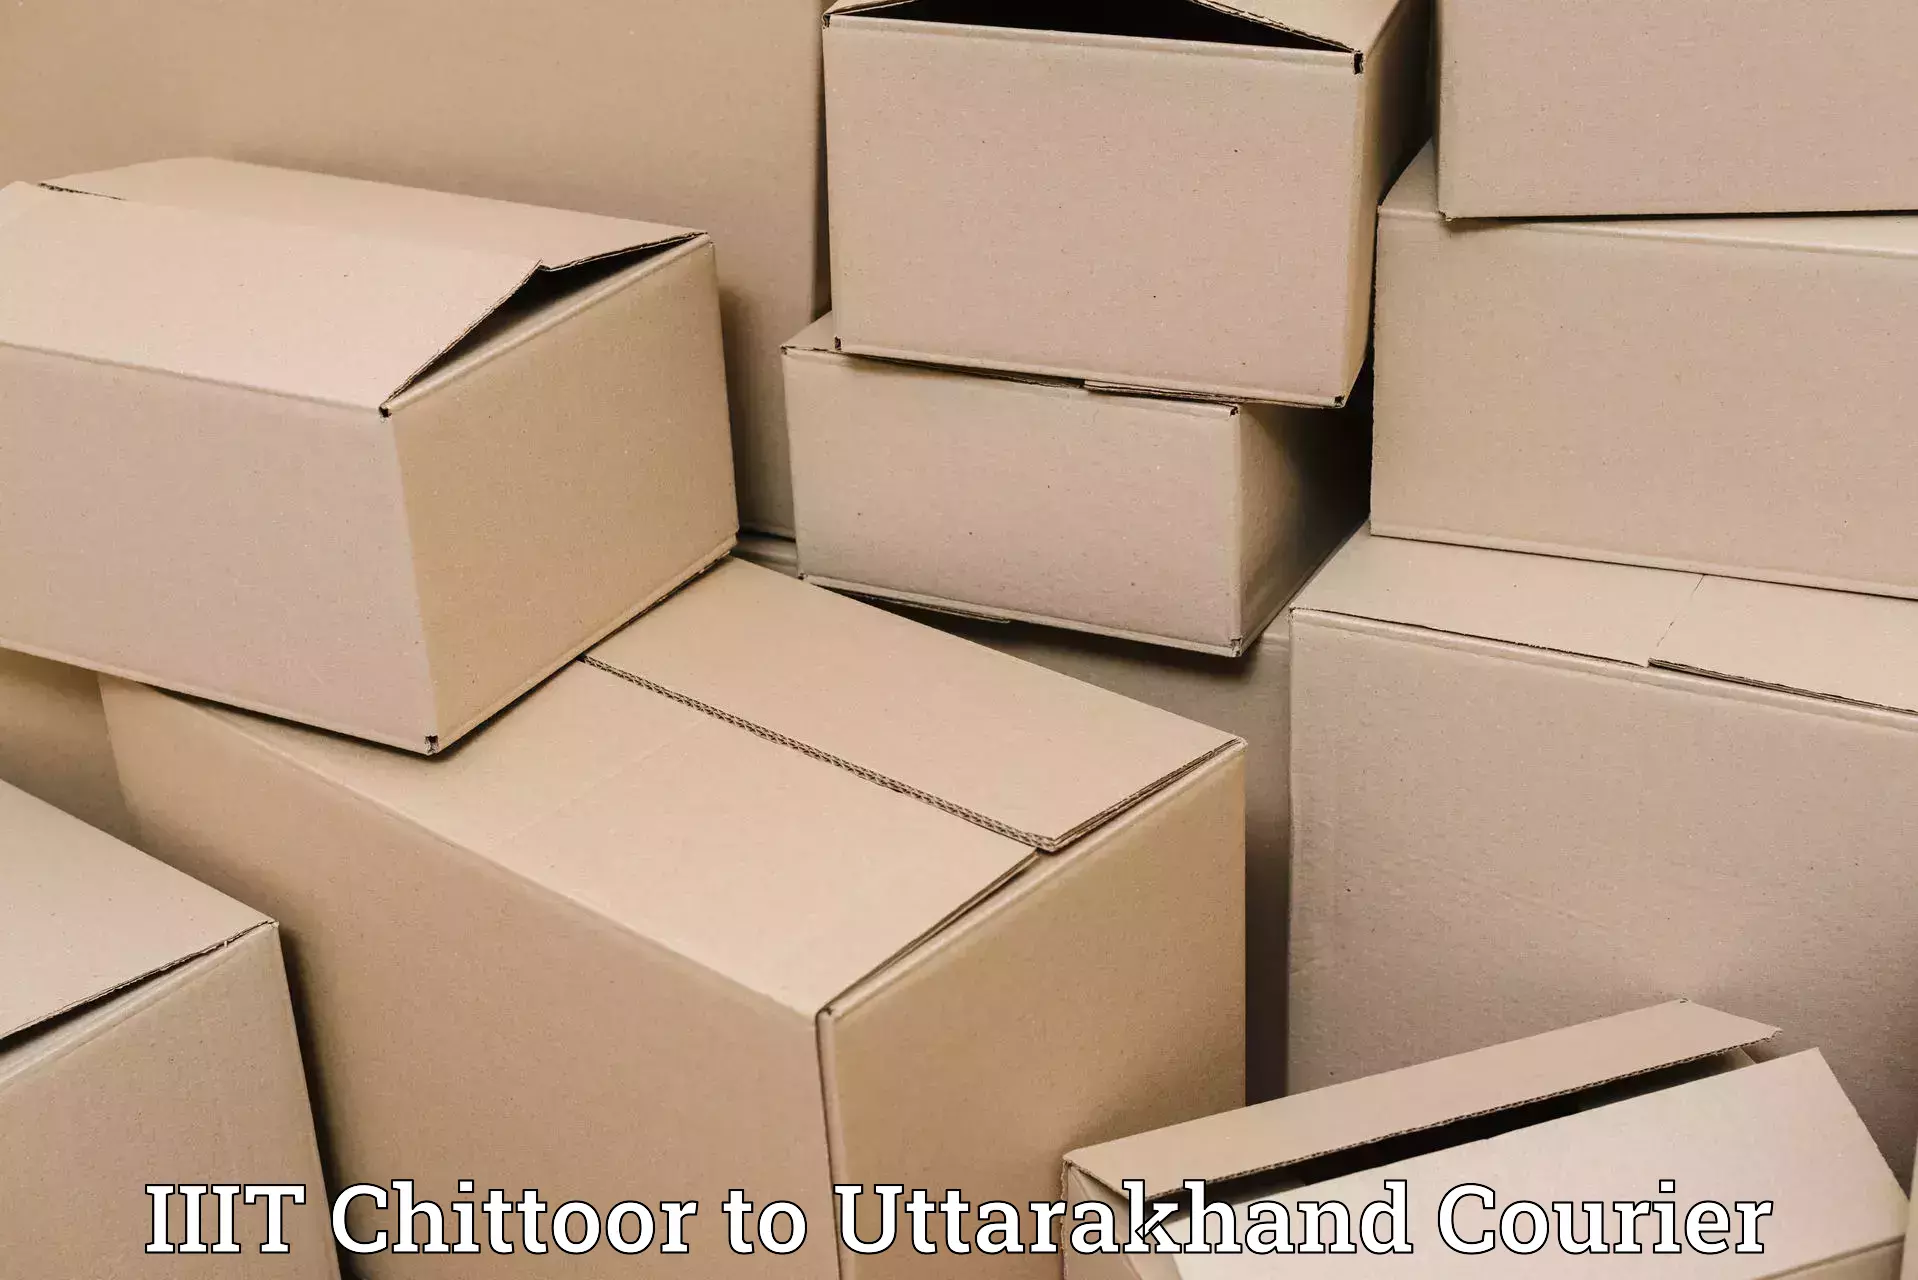 Efficient parcel transport in IIIT Chittoor to Haldwani